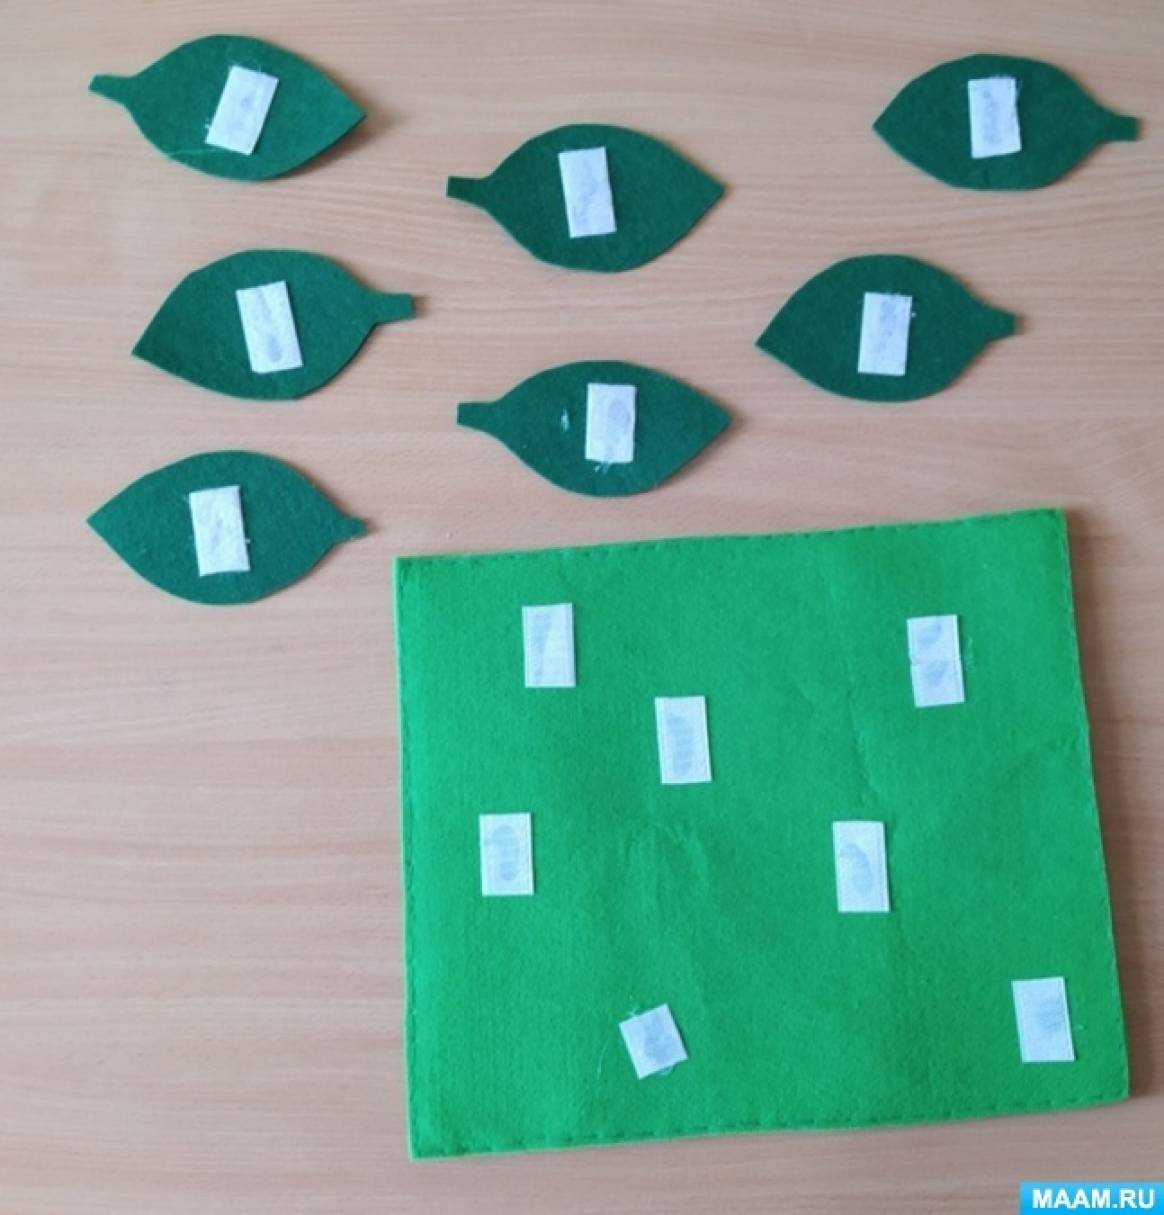 Математическая развивающая игра из фетра «Полянка божьих коровок» для детей от 2 до 5 лет